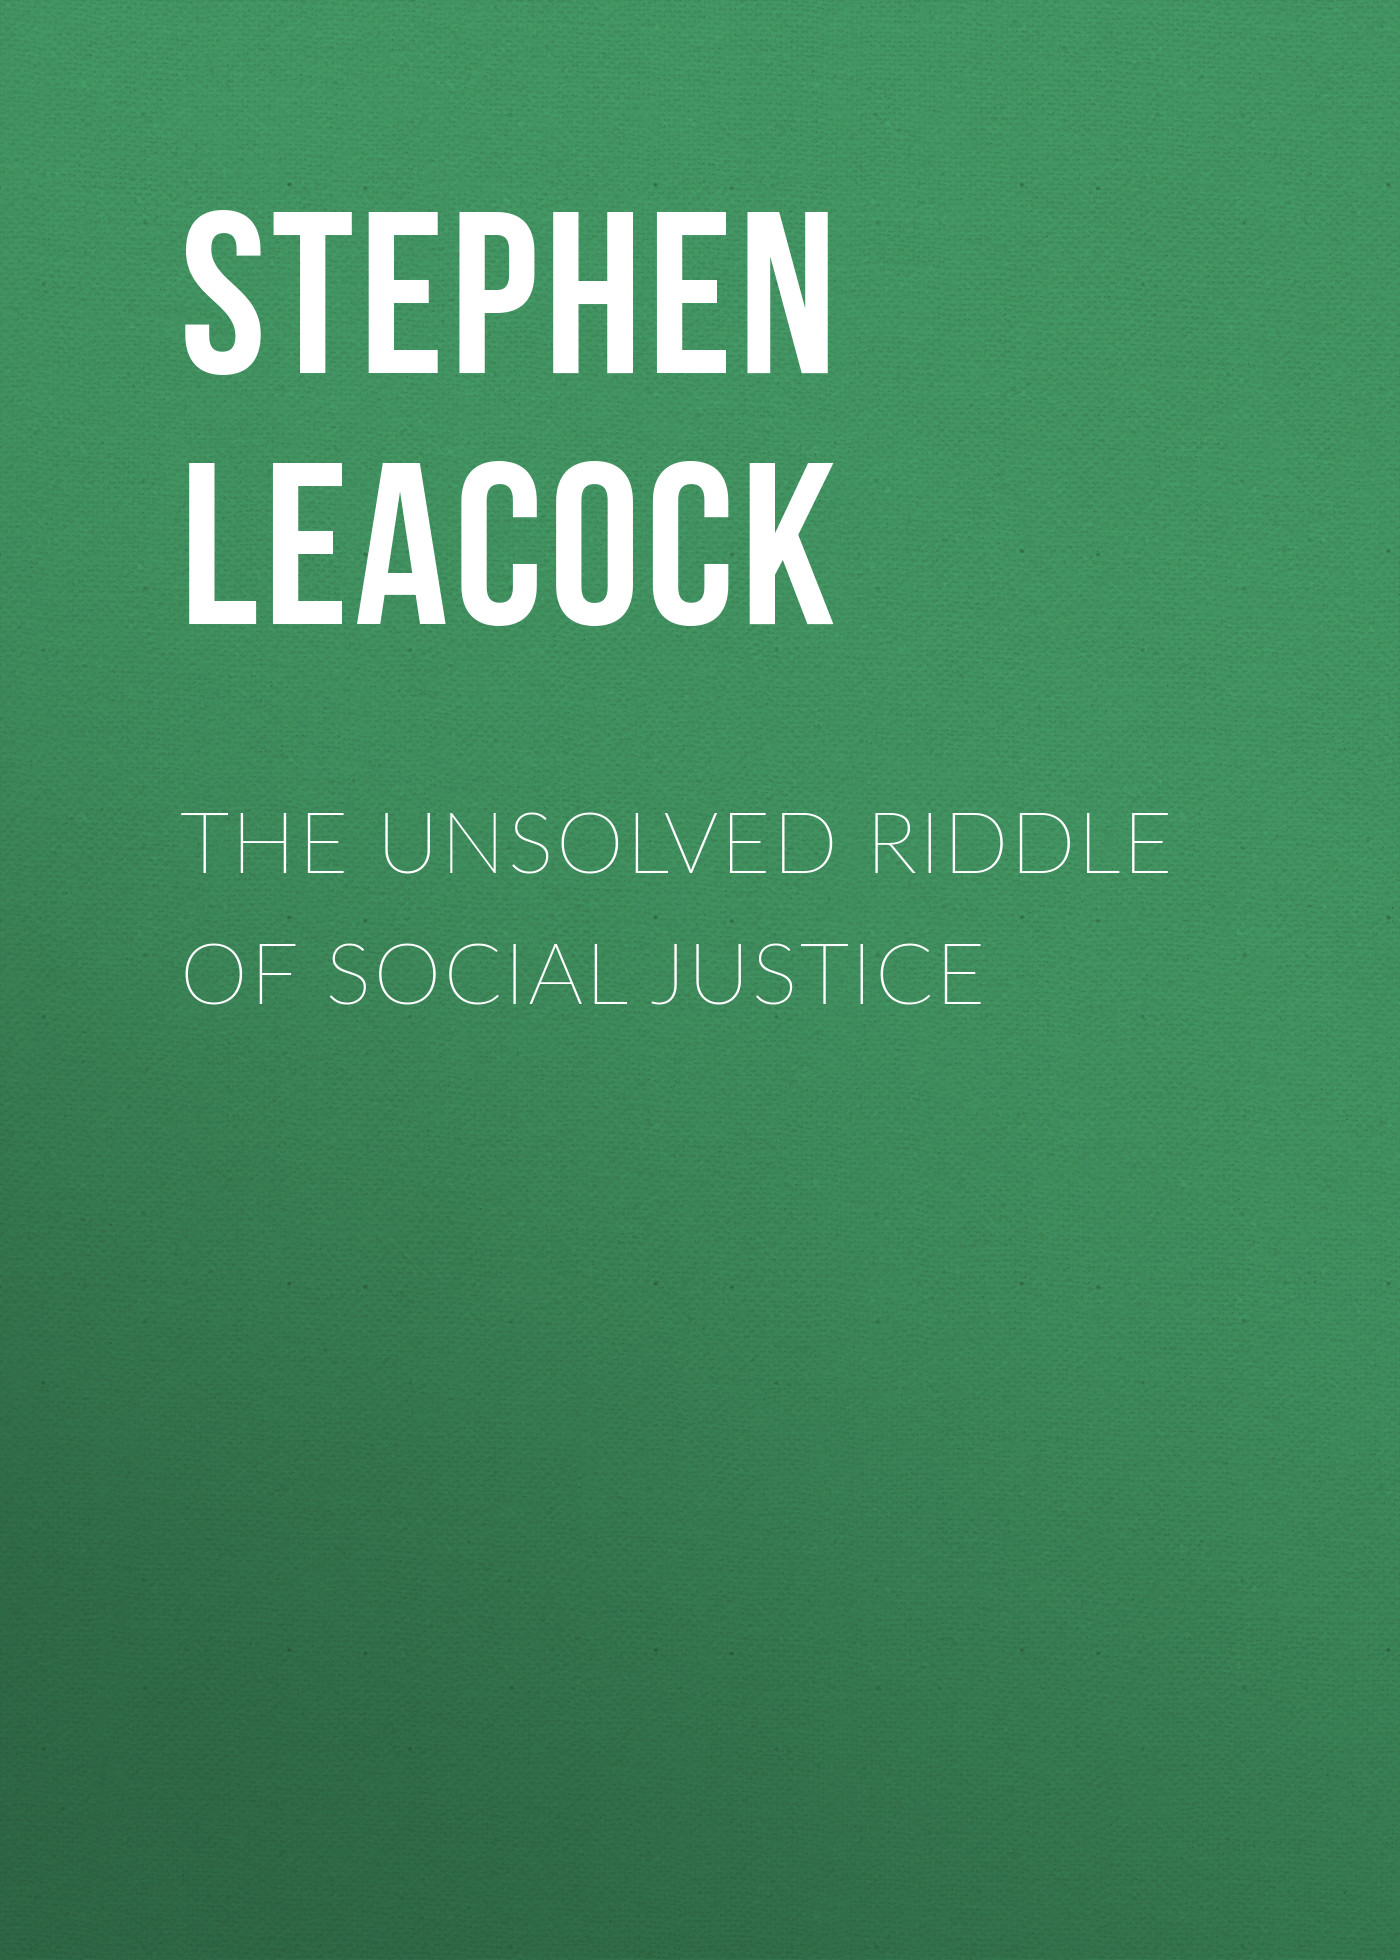 Книга The Unsolved Riddle of Social Justice из серии , созданная Stephen Leacock, может относится к жанру О бизнесе популярно, Экономика, Зарубежная образовательная литература, Зарубежная старинная литература. Стоимость электронной книги The Unsolved Riddle of Social Justice с идентификатором 36362918 составляет 0 руб.